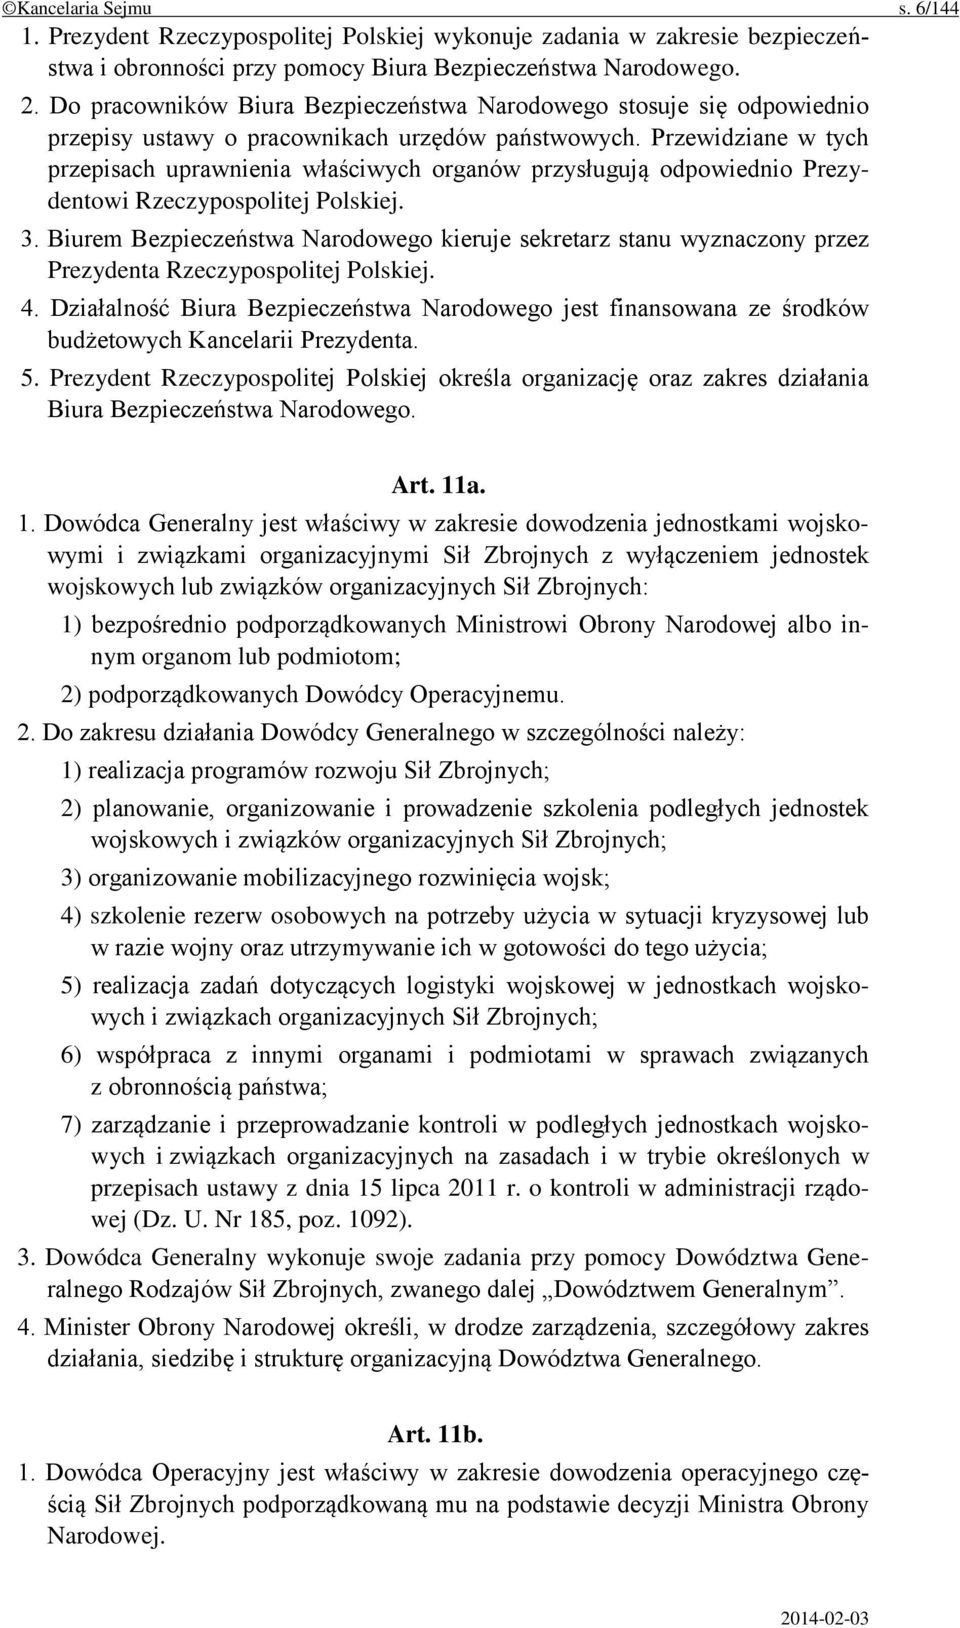 Przewidziane w tych przepisach uprawnienia właściwych organów przysługują odpowiednio Prezydentowi Rzeczypospolitej Polskiej. 3.